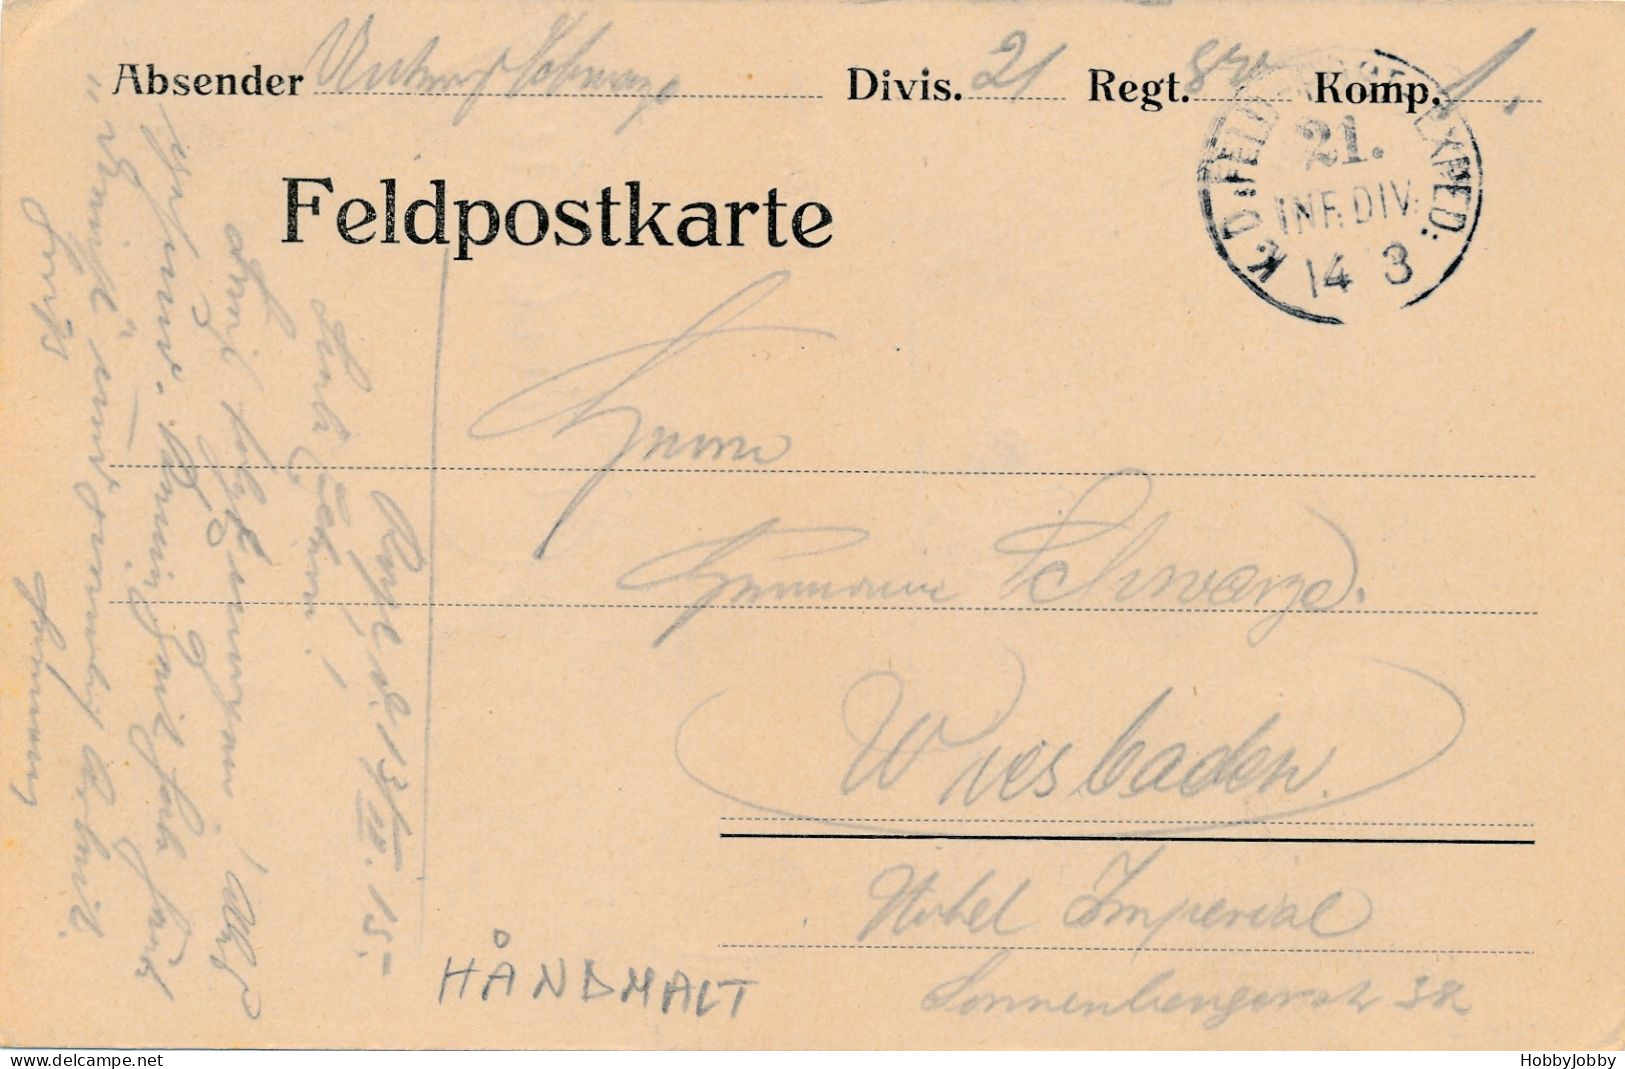 3 Stück I WK Handgezeichnet-Bleistift: Nachtwächter-Nassau 1917/PFEIFERAUCHER & Innerer Haupteingang Zentral Gefägnis-Fr - Barracks